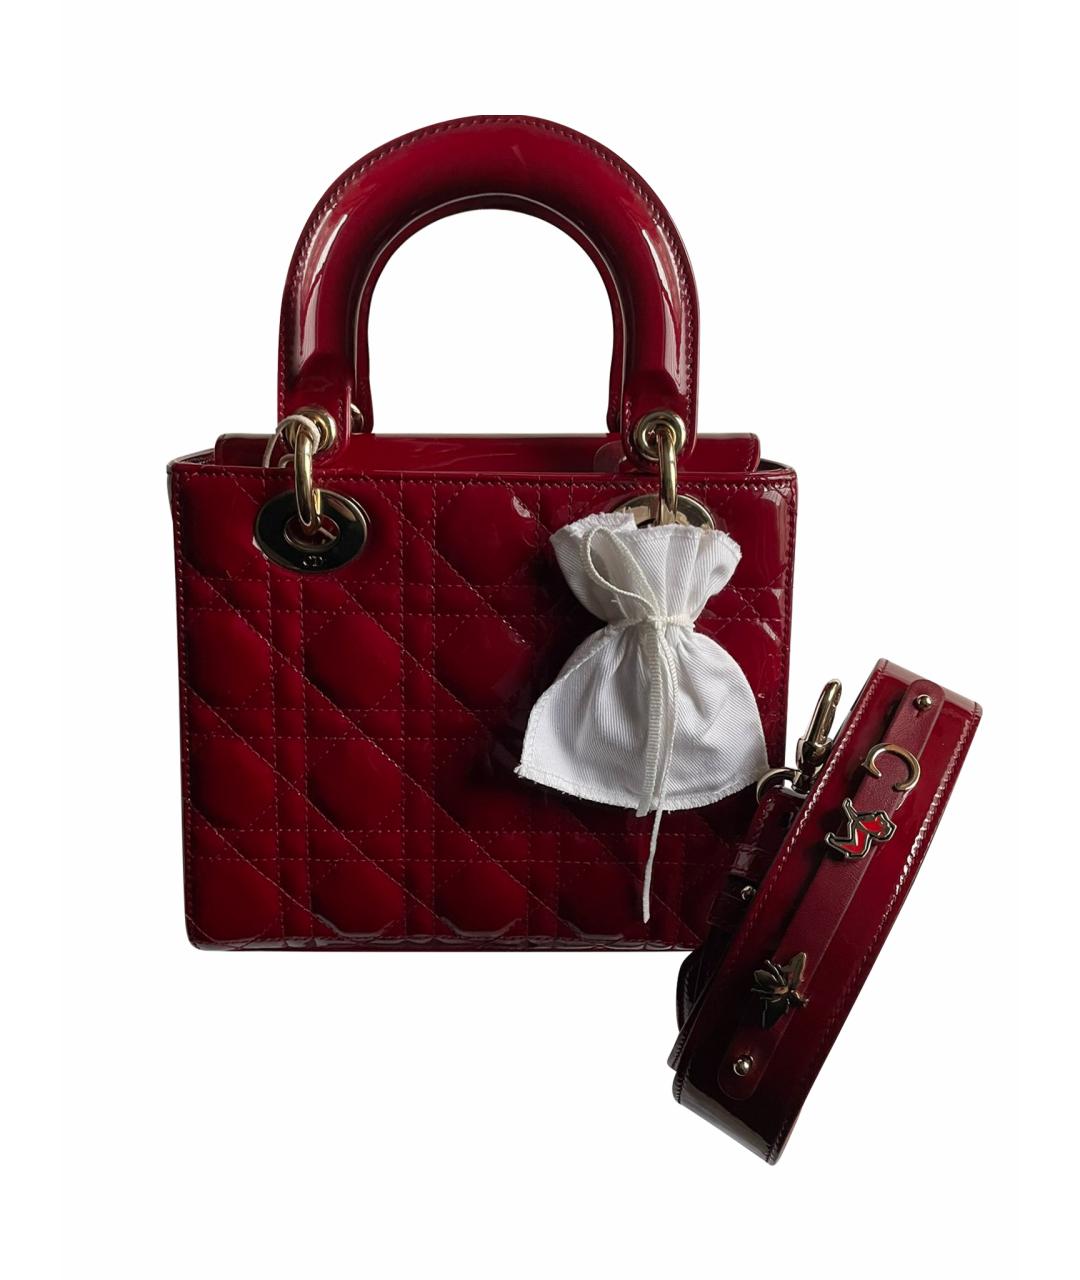 CHRISTIAN DIOR PRE-OWNED Красная сумка с короткими ручками из лакированной кожи, фото 1